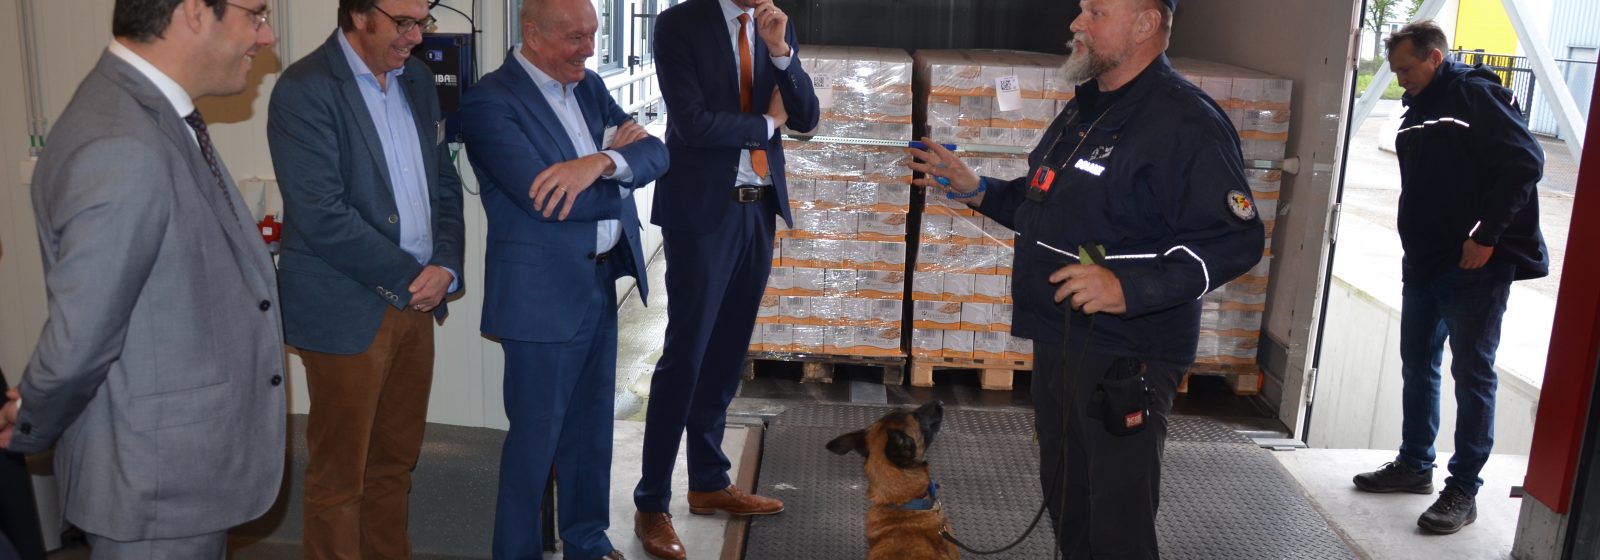 Ministers Clarinval en Van Peteghem kregen tijdens hun rondleiding in de grenscontrolepost ook een demonstratie met een drugshond te zien.